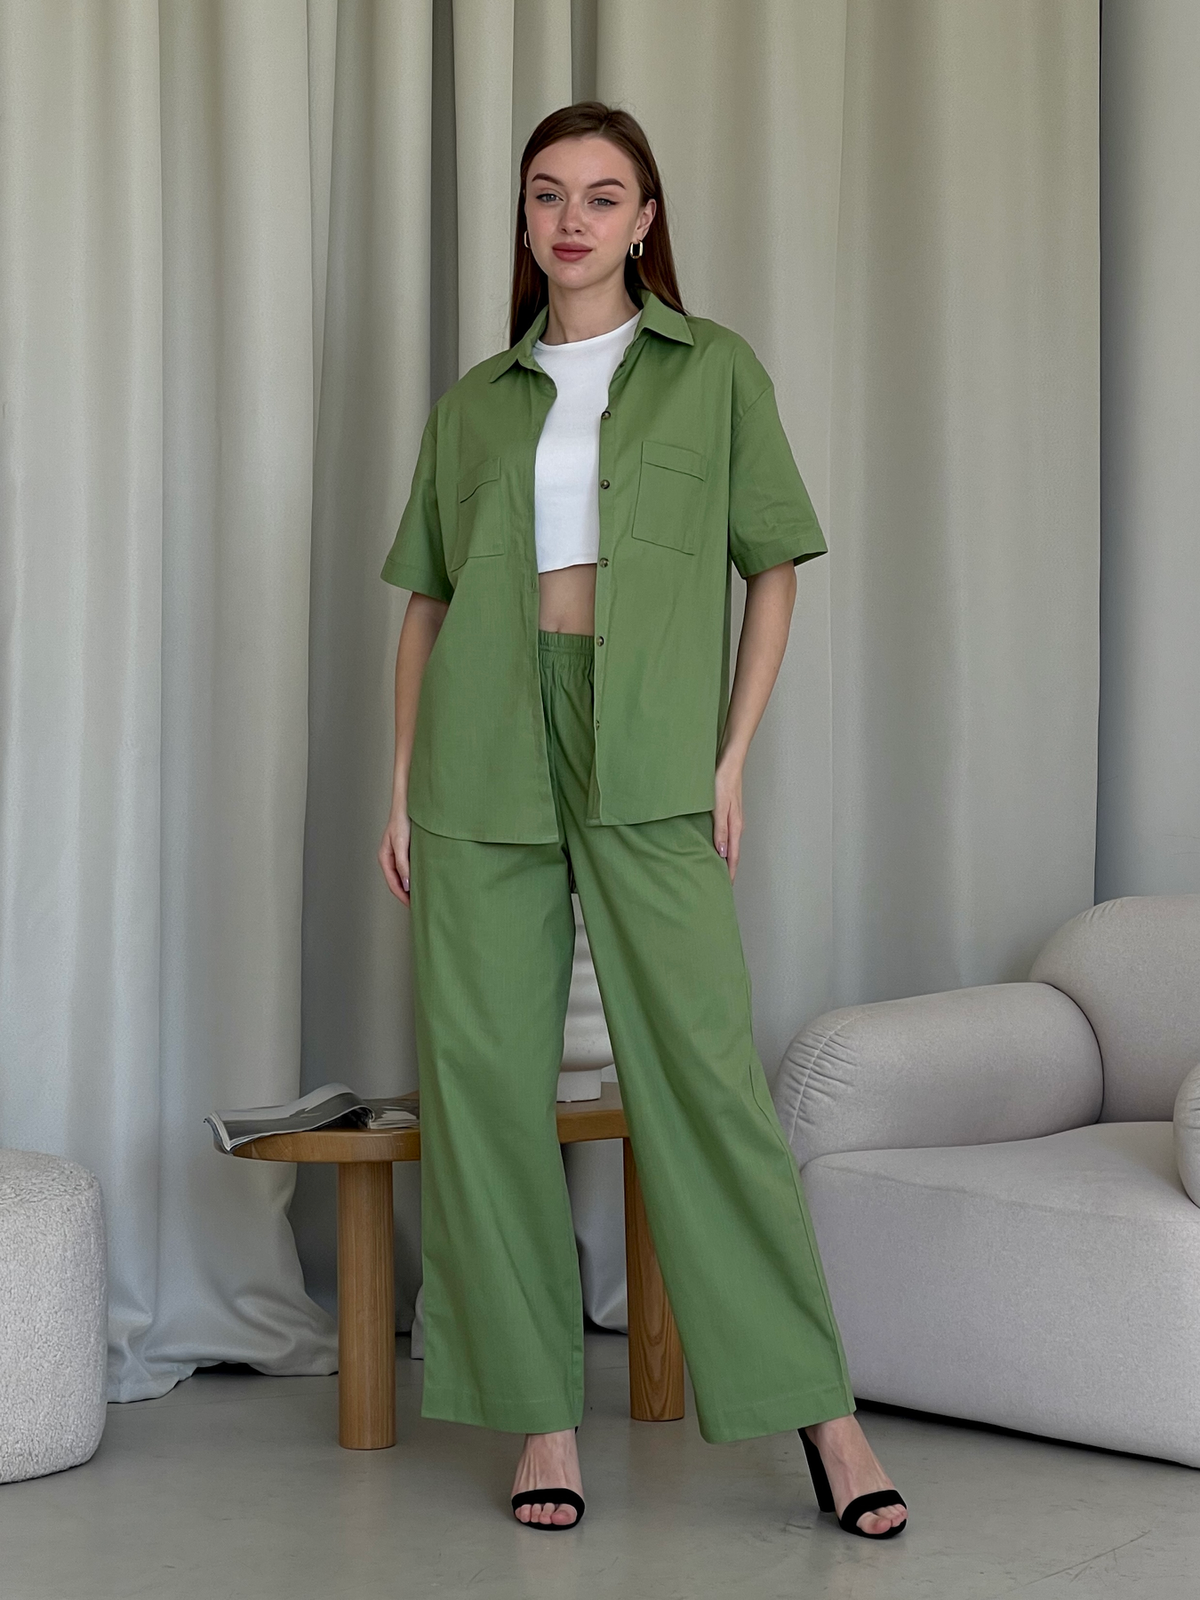 Льняные штаны палаццо зеленые Merlini Торио 600001205 размер 42-44 (S-M)